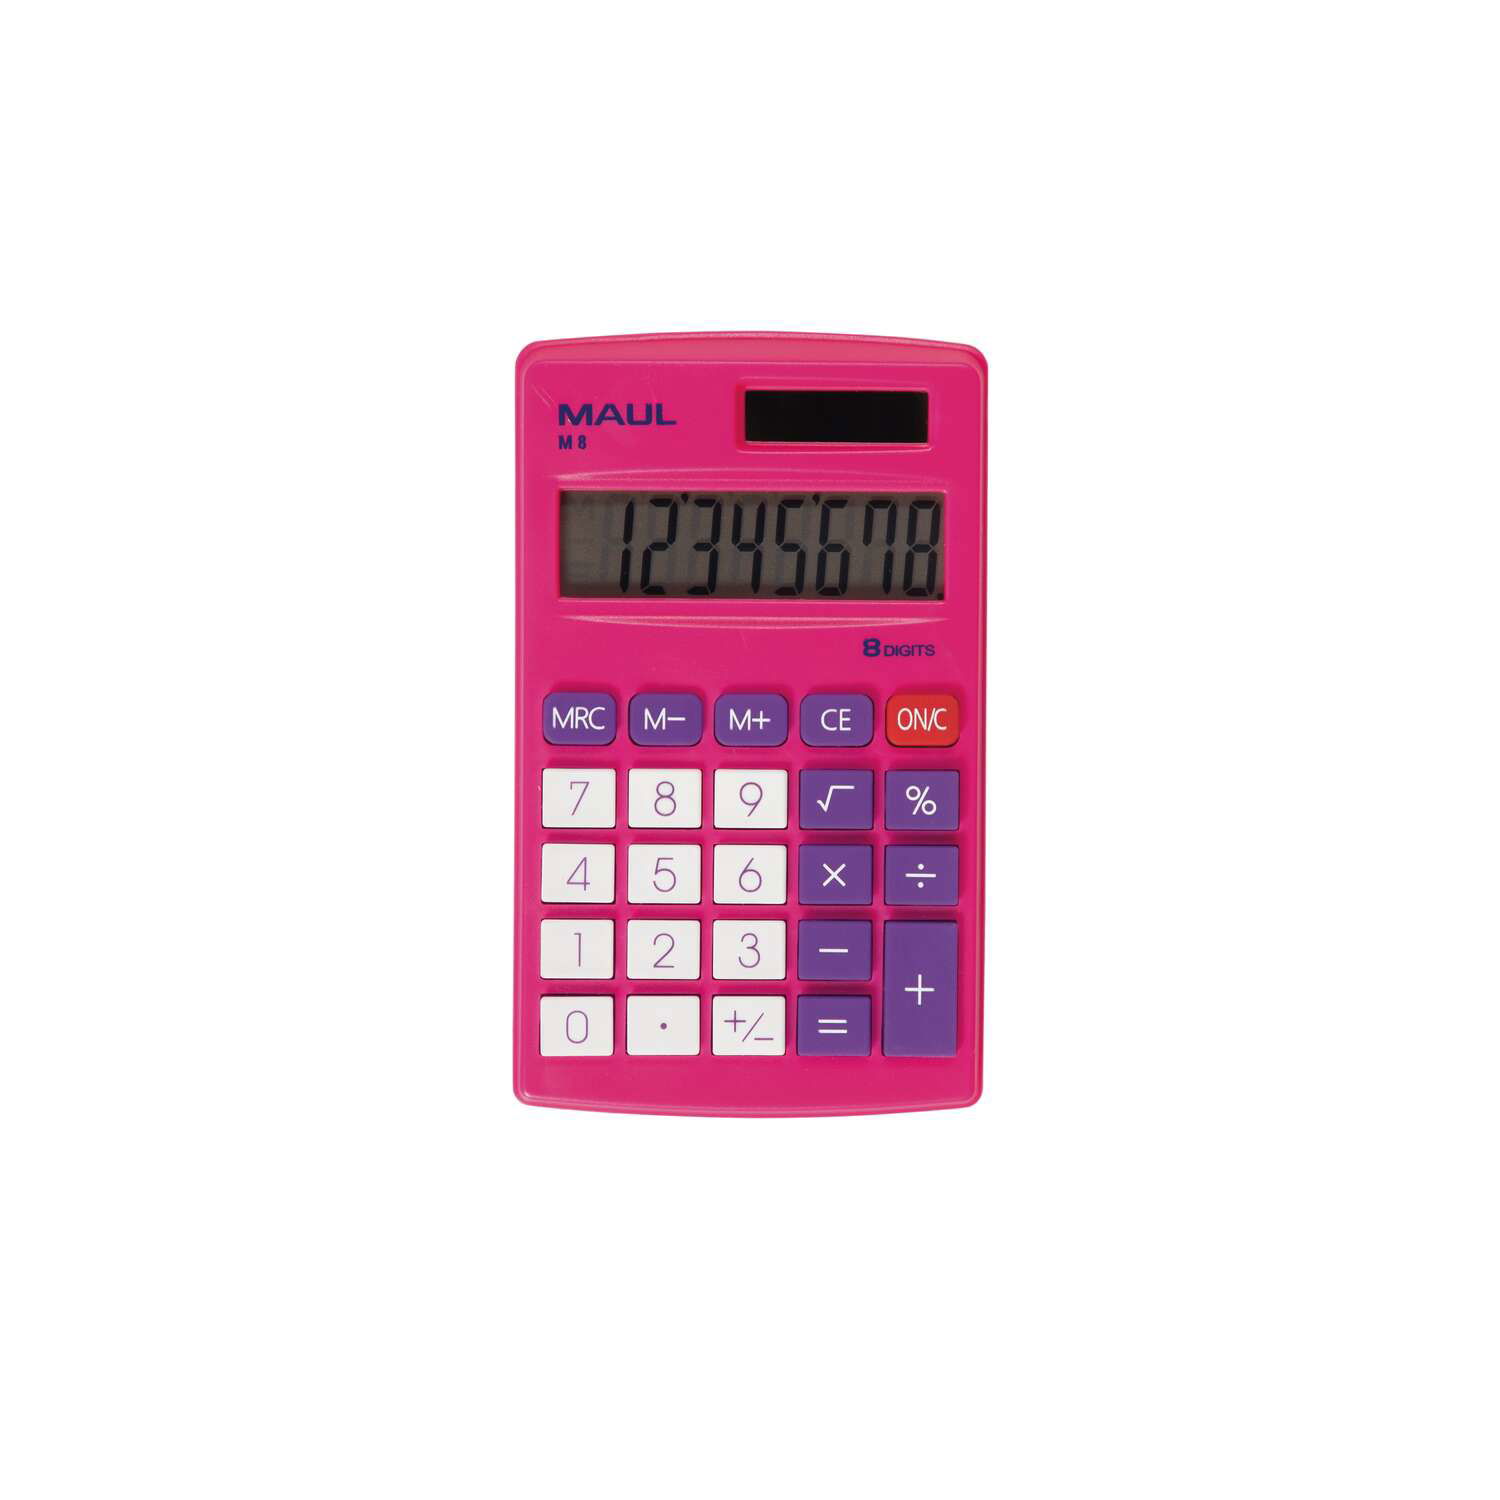 MAUL Taschenrechner M 8 Solar Batterie 1-zeilig, 8 Ziffern pink